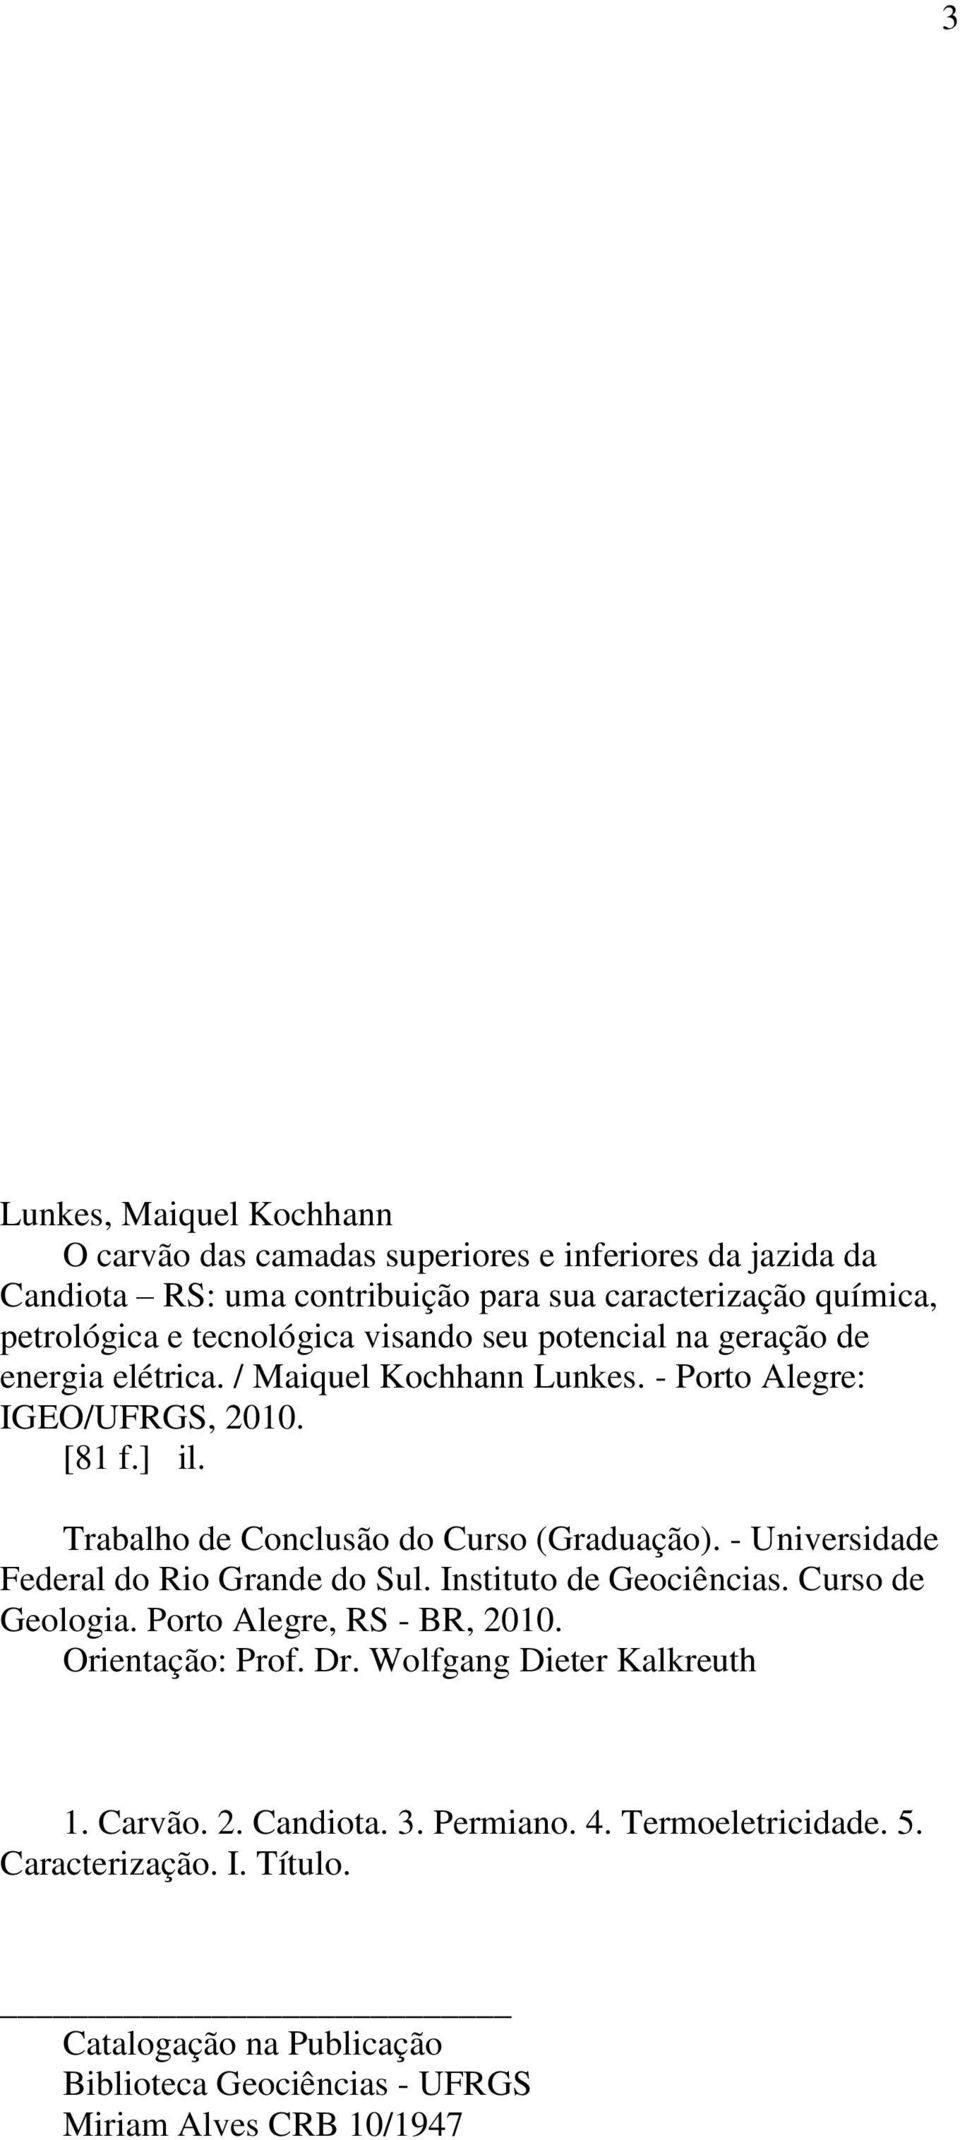 Trabalho de Conclusão do Curso (Graduação). - Universidade Federal do Rio Grande do Sul. Instituto de Geociências. Curso de Geologia. Porto Alegre, RS - BR, 2010.